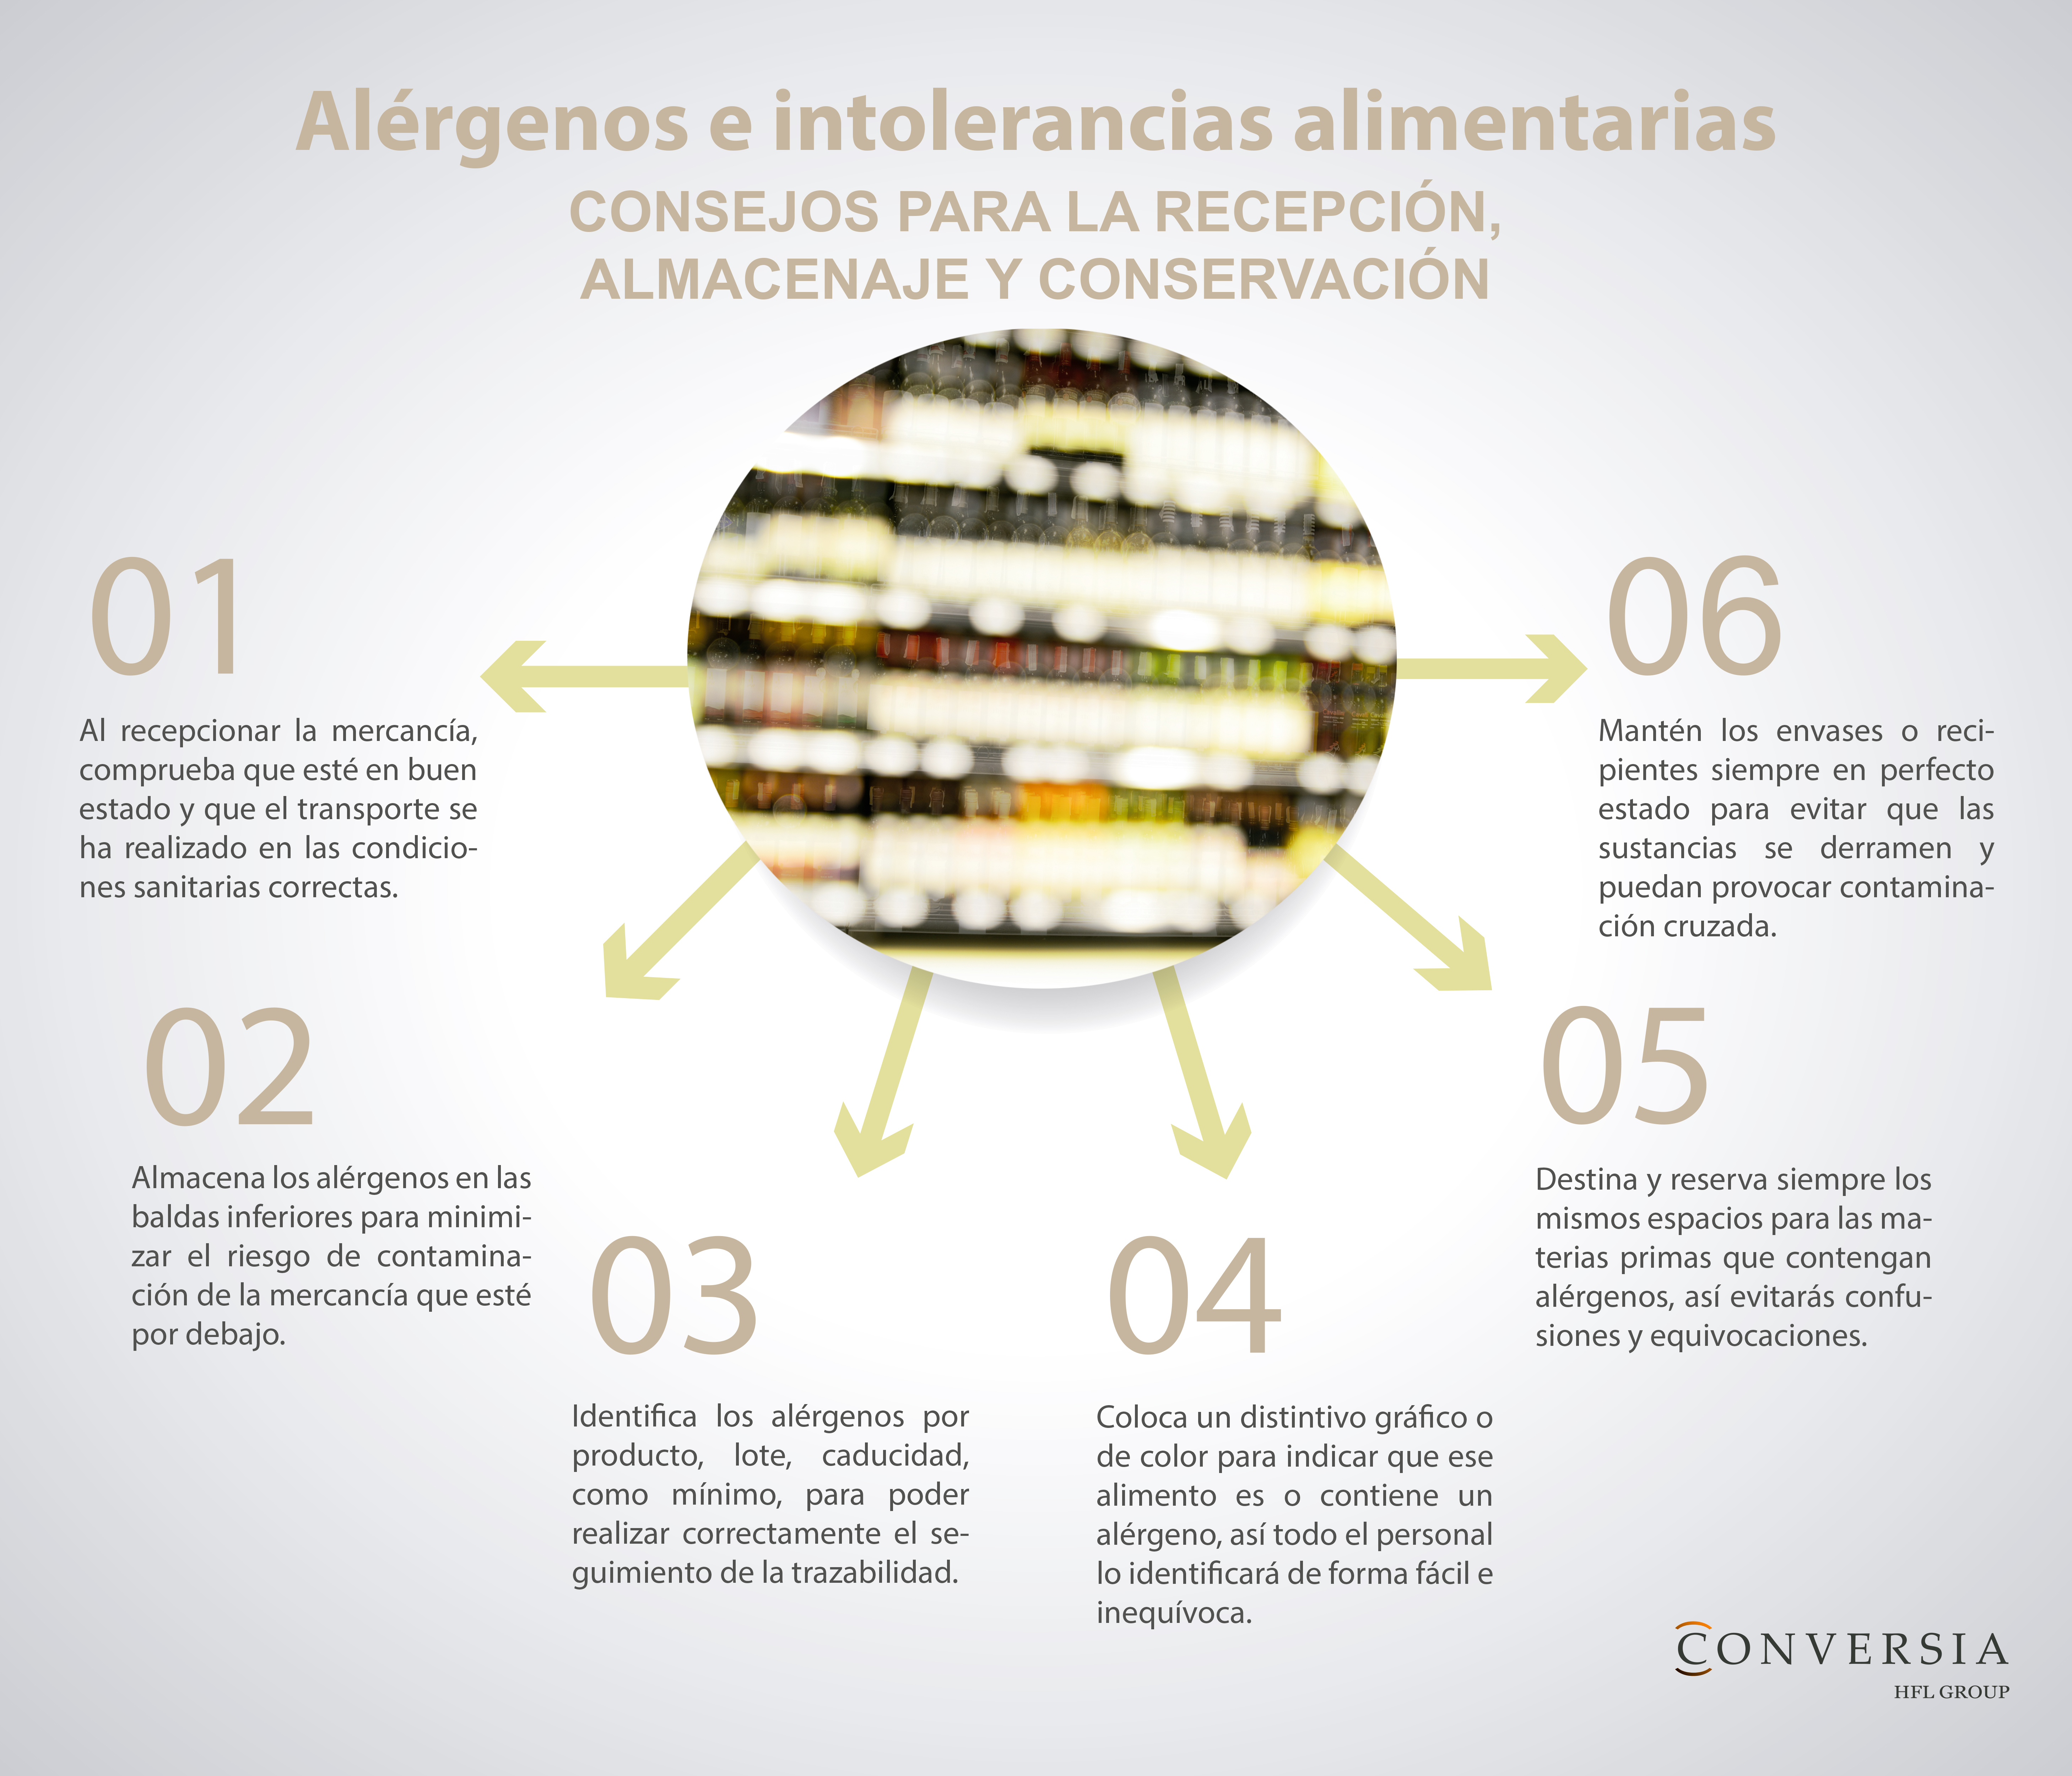 Infografía de Conversia con consejos para la recepción, el almacenaje y la conservación de alimentos en casos de alergias e intolerancias alimentarias